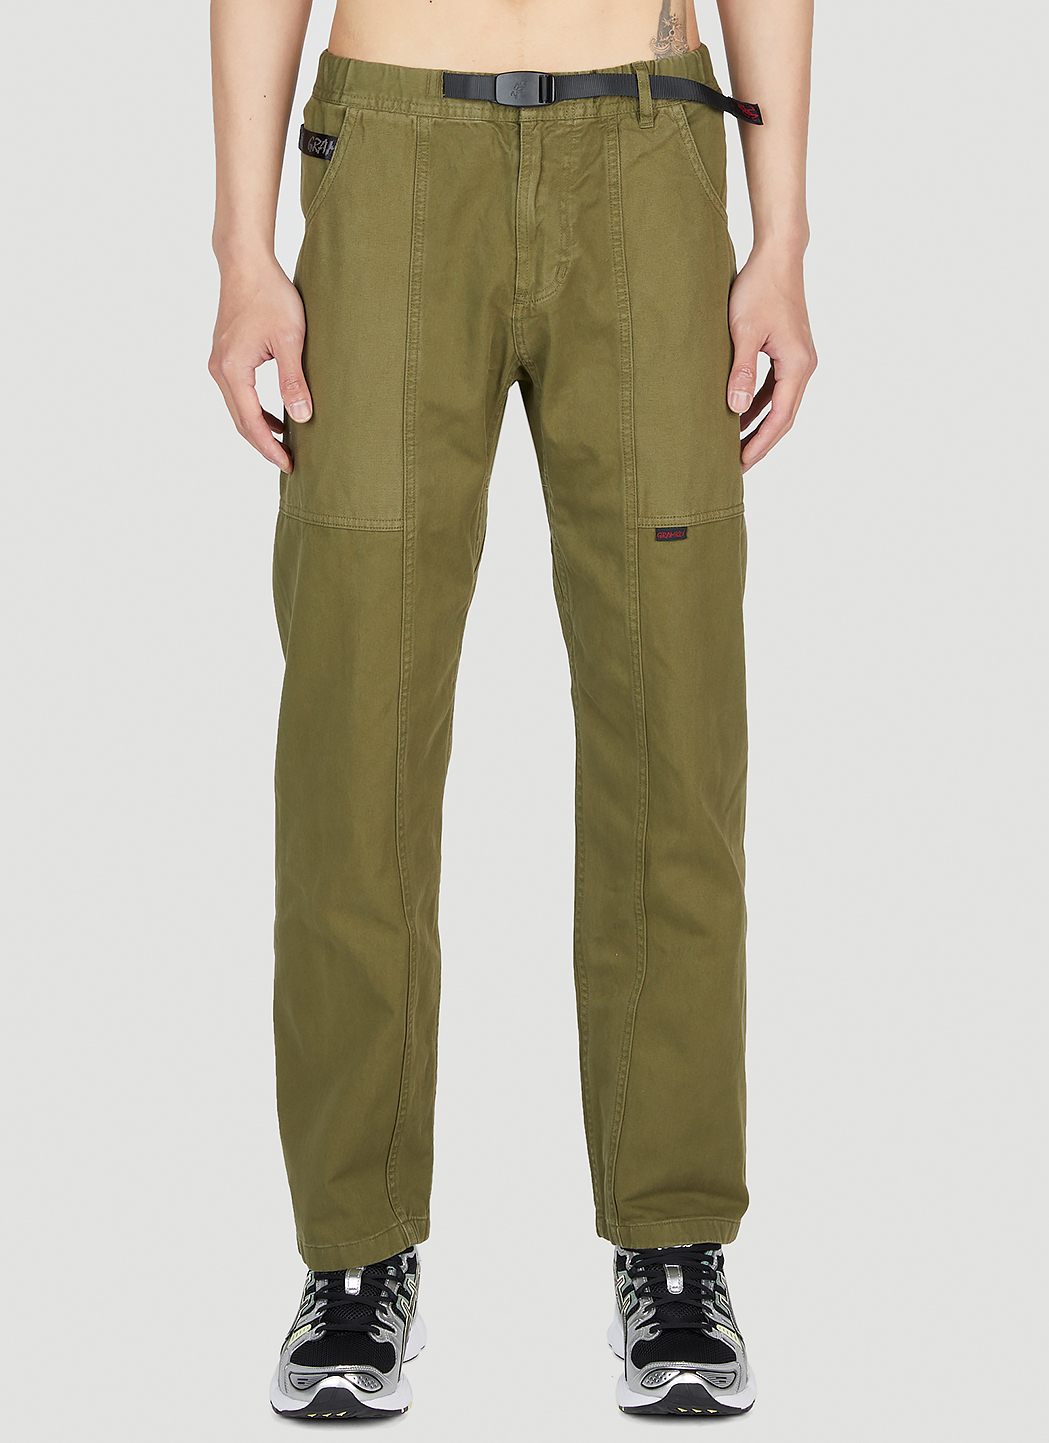 Gramicci Men's Gadget Pants in Olive | LN-CC®